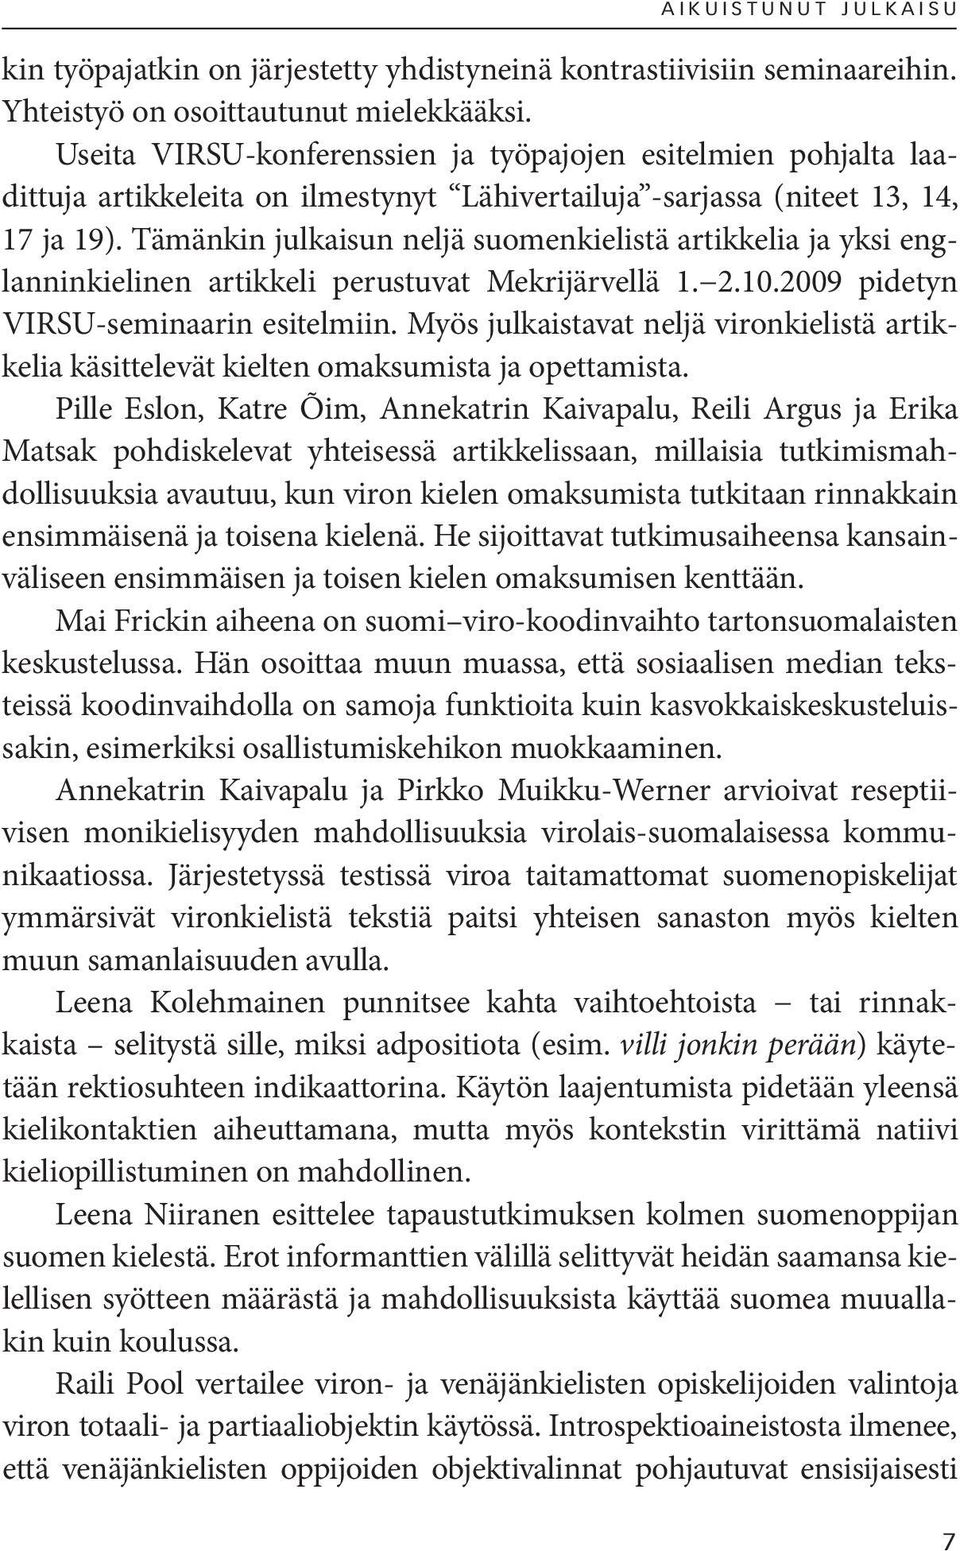 Tämänkin julkaisun neljä suomenkielistä artikkelia ja yksi englanninkielinen artikkeli perustuvat Mekrijärvellä 1. 2.10.2009 pidetyn VIRSU-seminaarin esitelmiin.